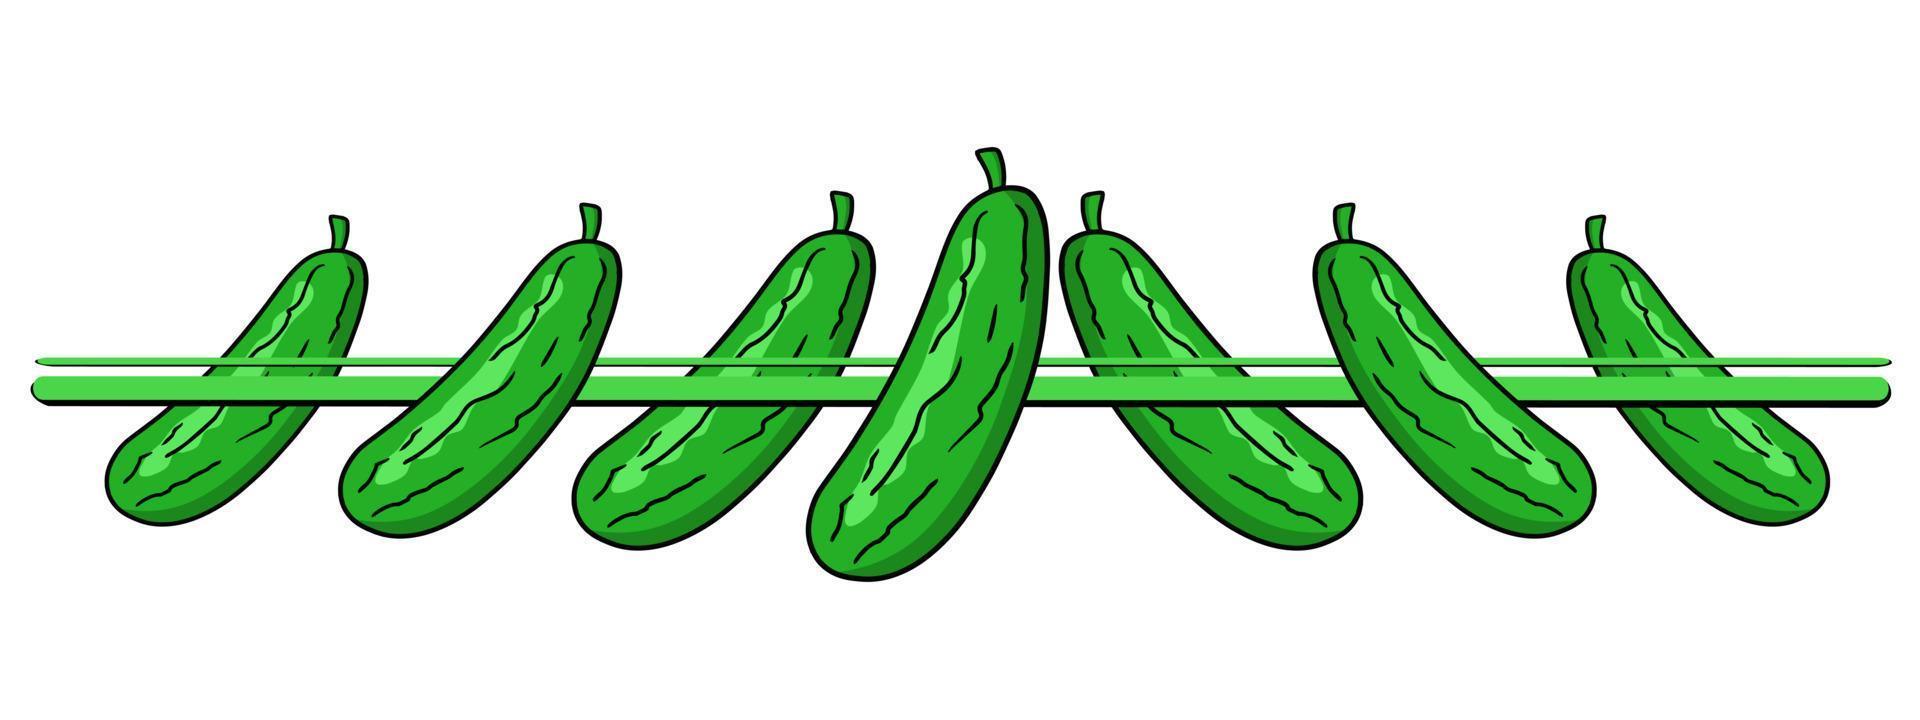 bordure horizontale, bord, concombres verts juteux mûrs, collection de légumes, illustration vectorielle en style cartoon vecteur